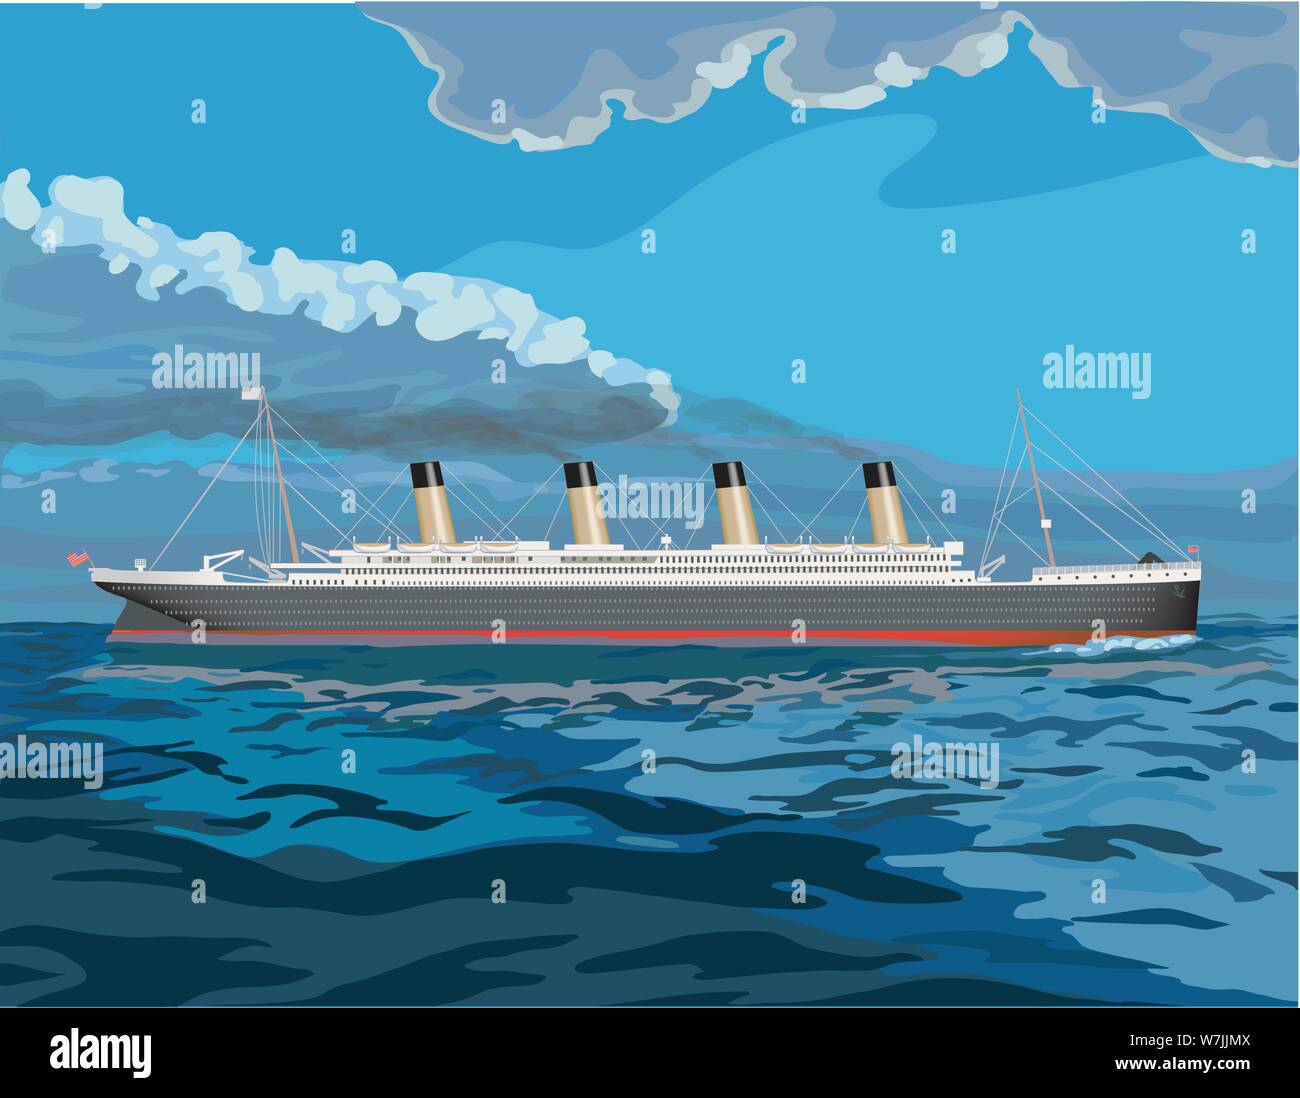 Titanic, vintage nave a vapore illustrazione con fumo nero versare è di pile come chugs attraverso il mare Illustrazione Vettoriale